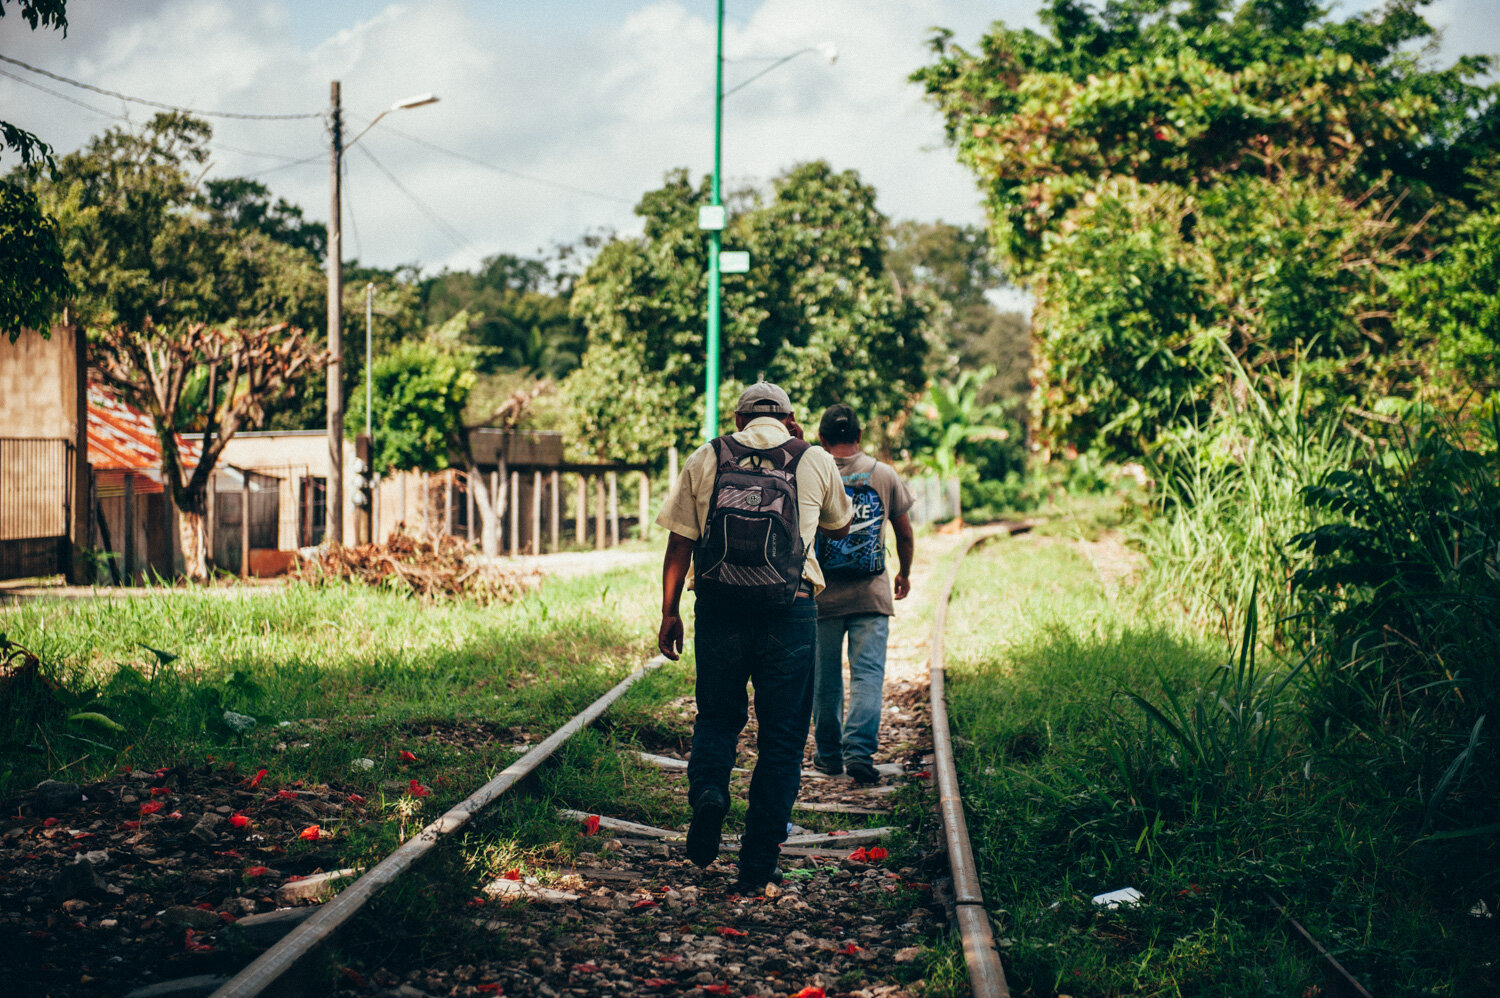  Des migrants repprennent la route après avoir repris des forces à la maison de migrants de Palenque qui accueille pour 3 jours maximum. Repas, douche, soins médicaux et information sur les droits, les routes migratoires, et les risques à éviter. Pal